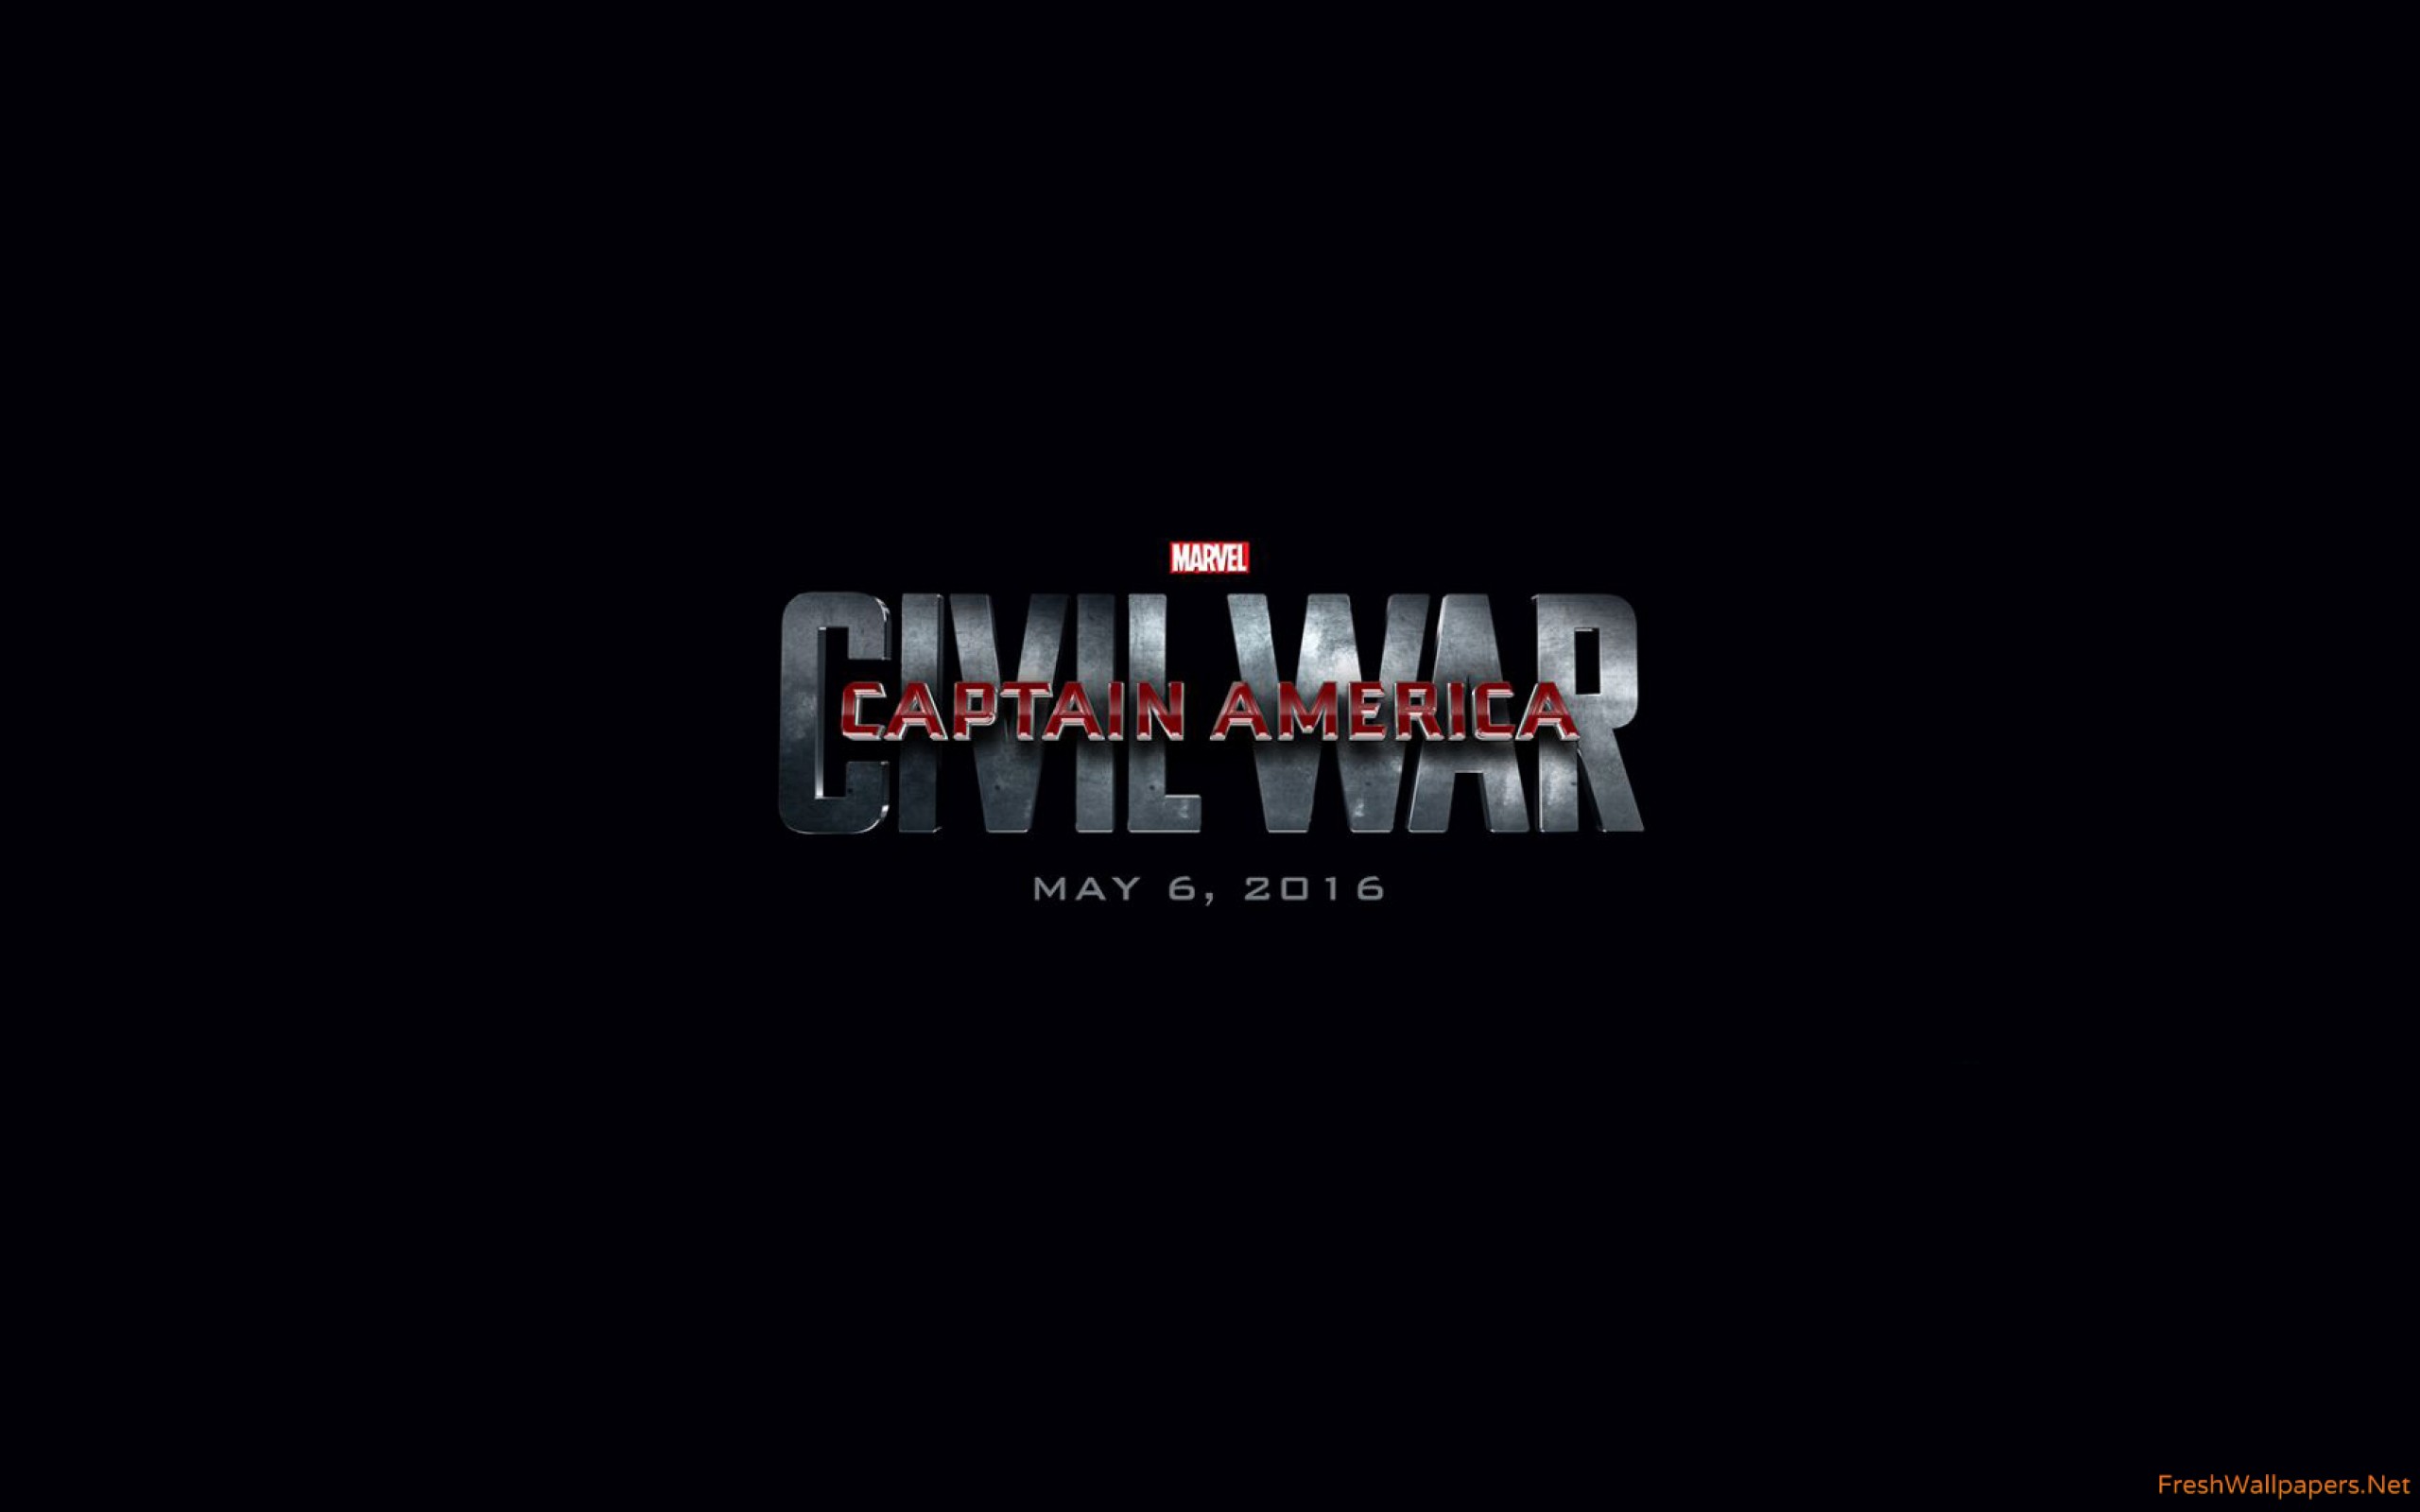 Captain America Civil War 2016 wallpapers | Freshwallpapers